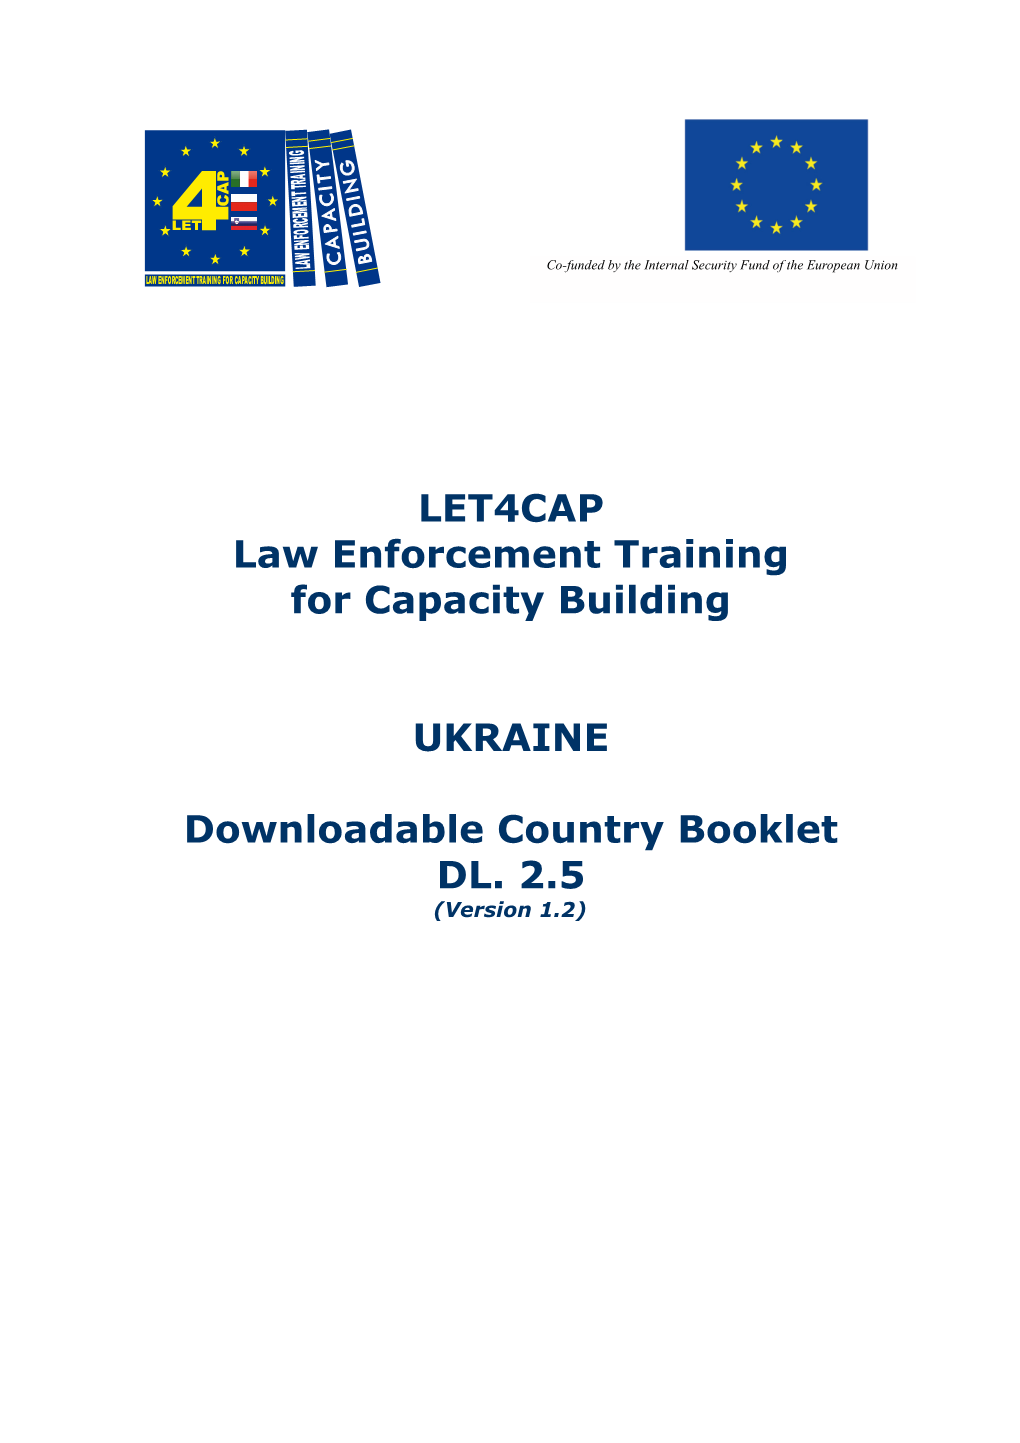 LET4CAP Law Enforcement Training for Capacity Building UKRAINE